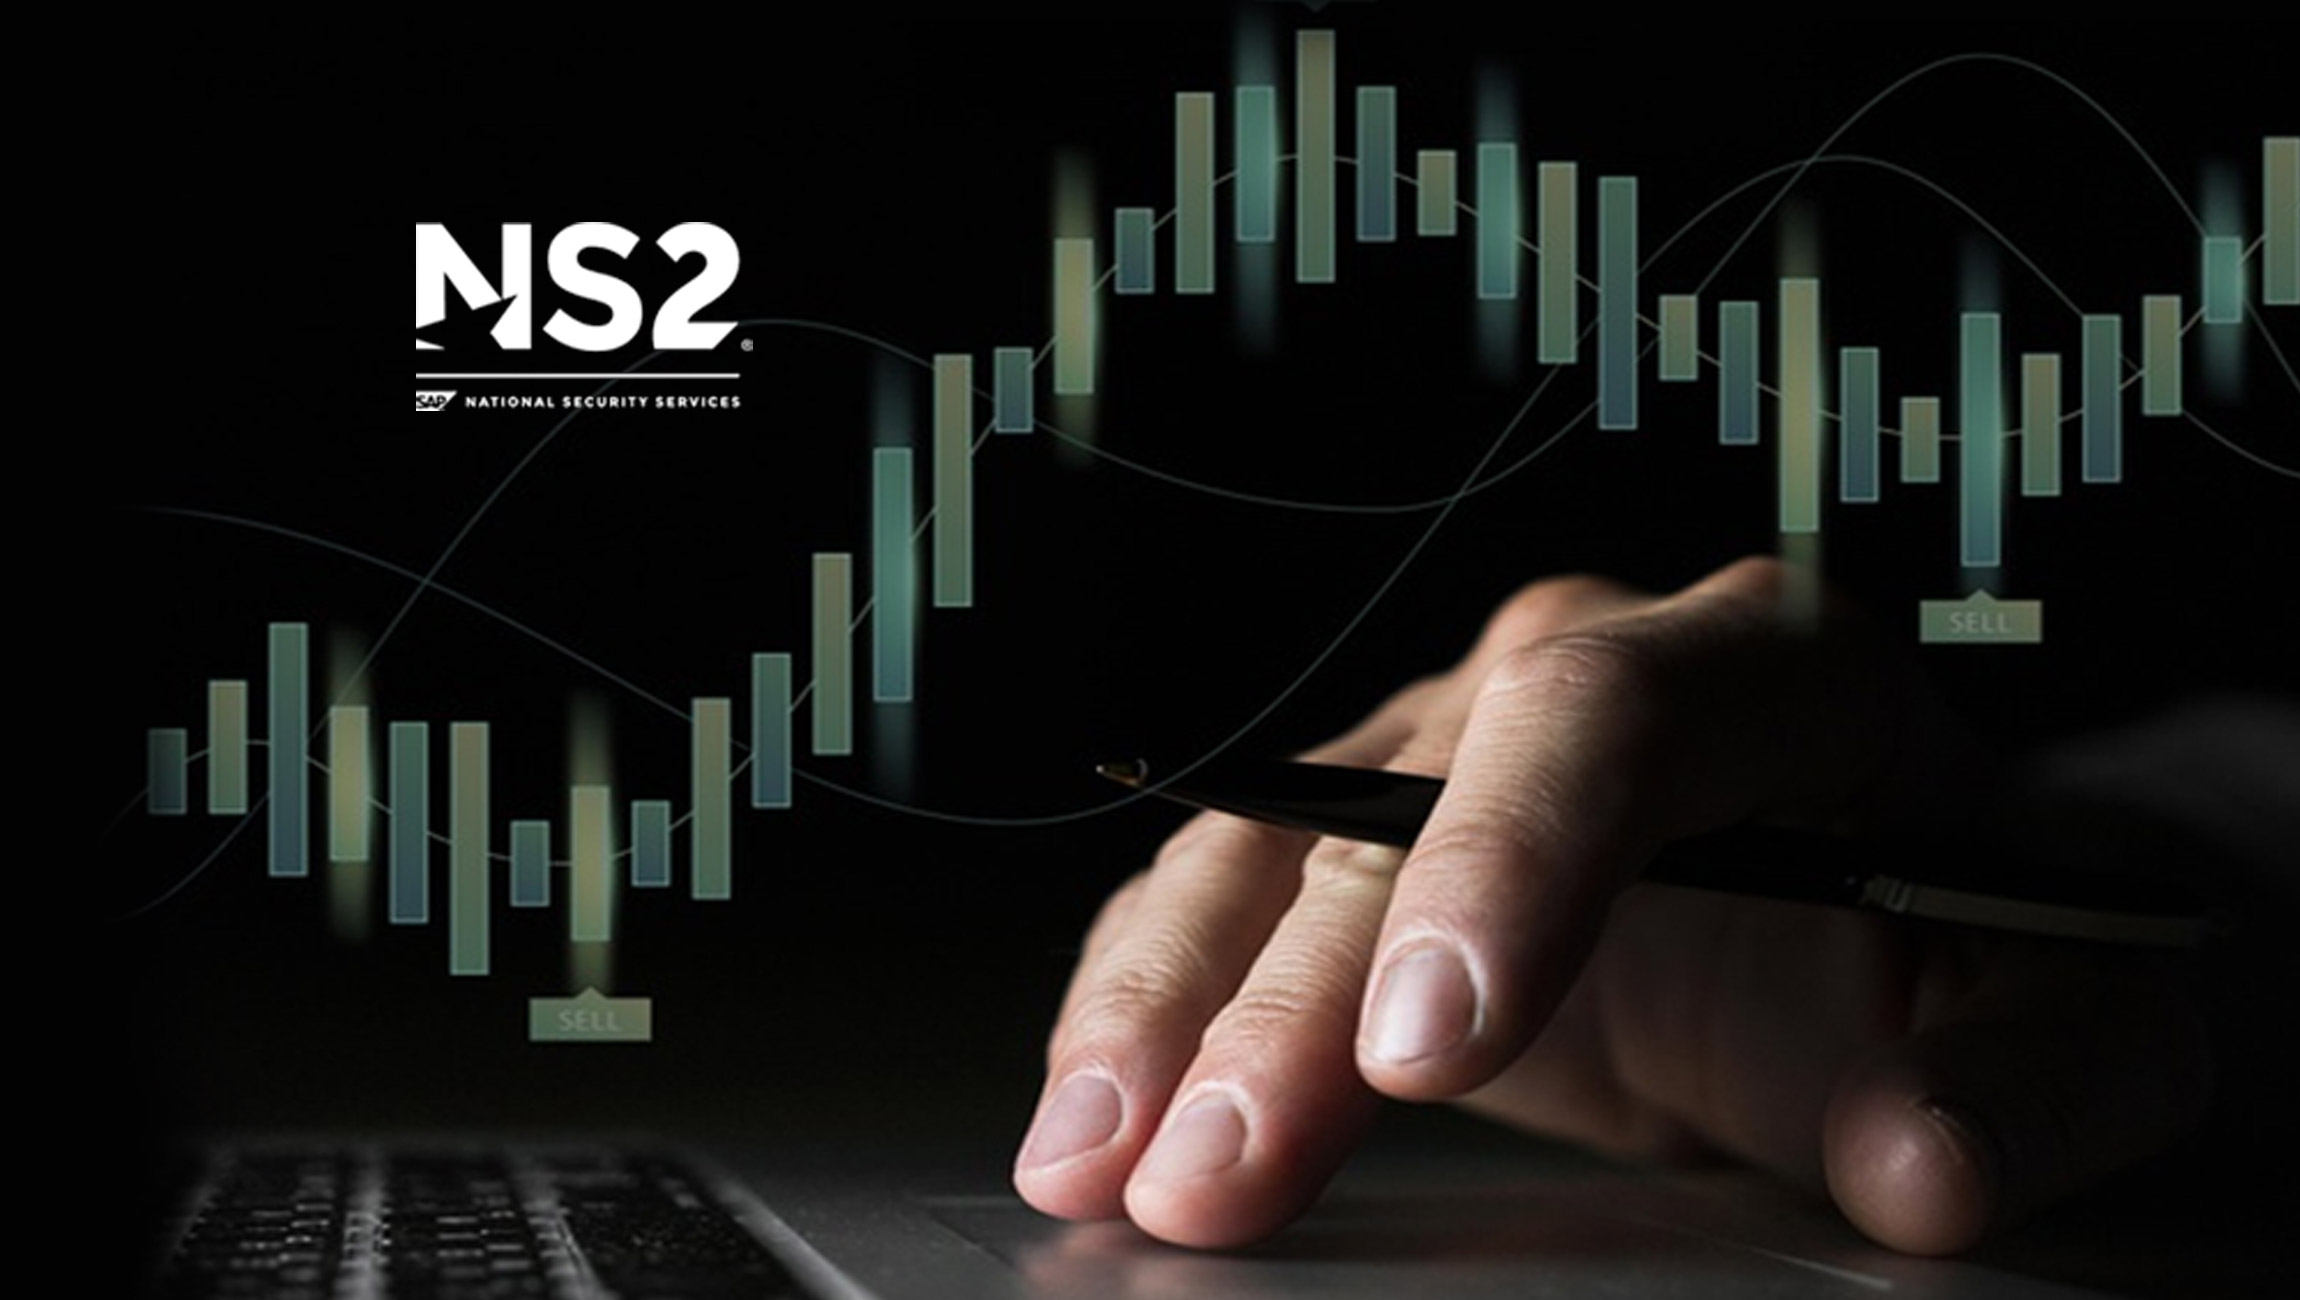 SAP NS2® Announces NS2 Marketplace